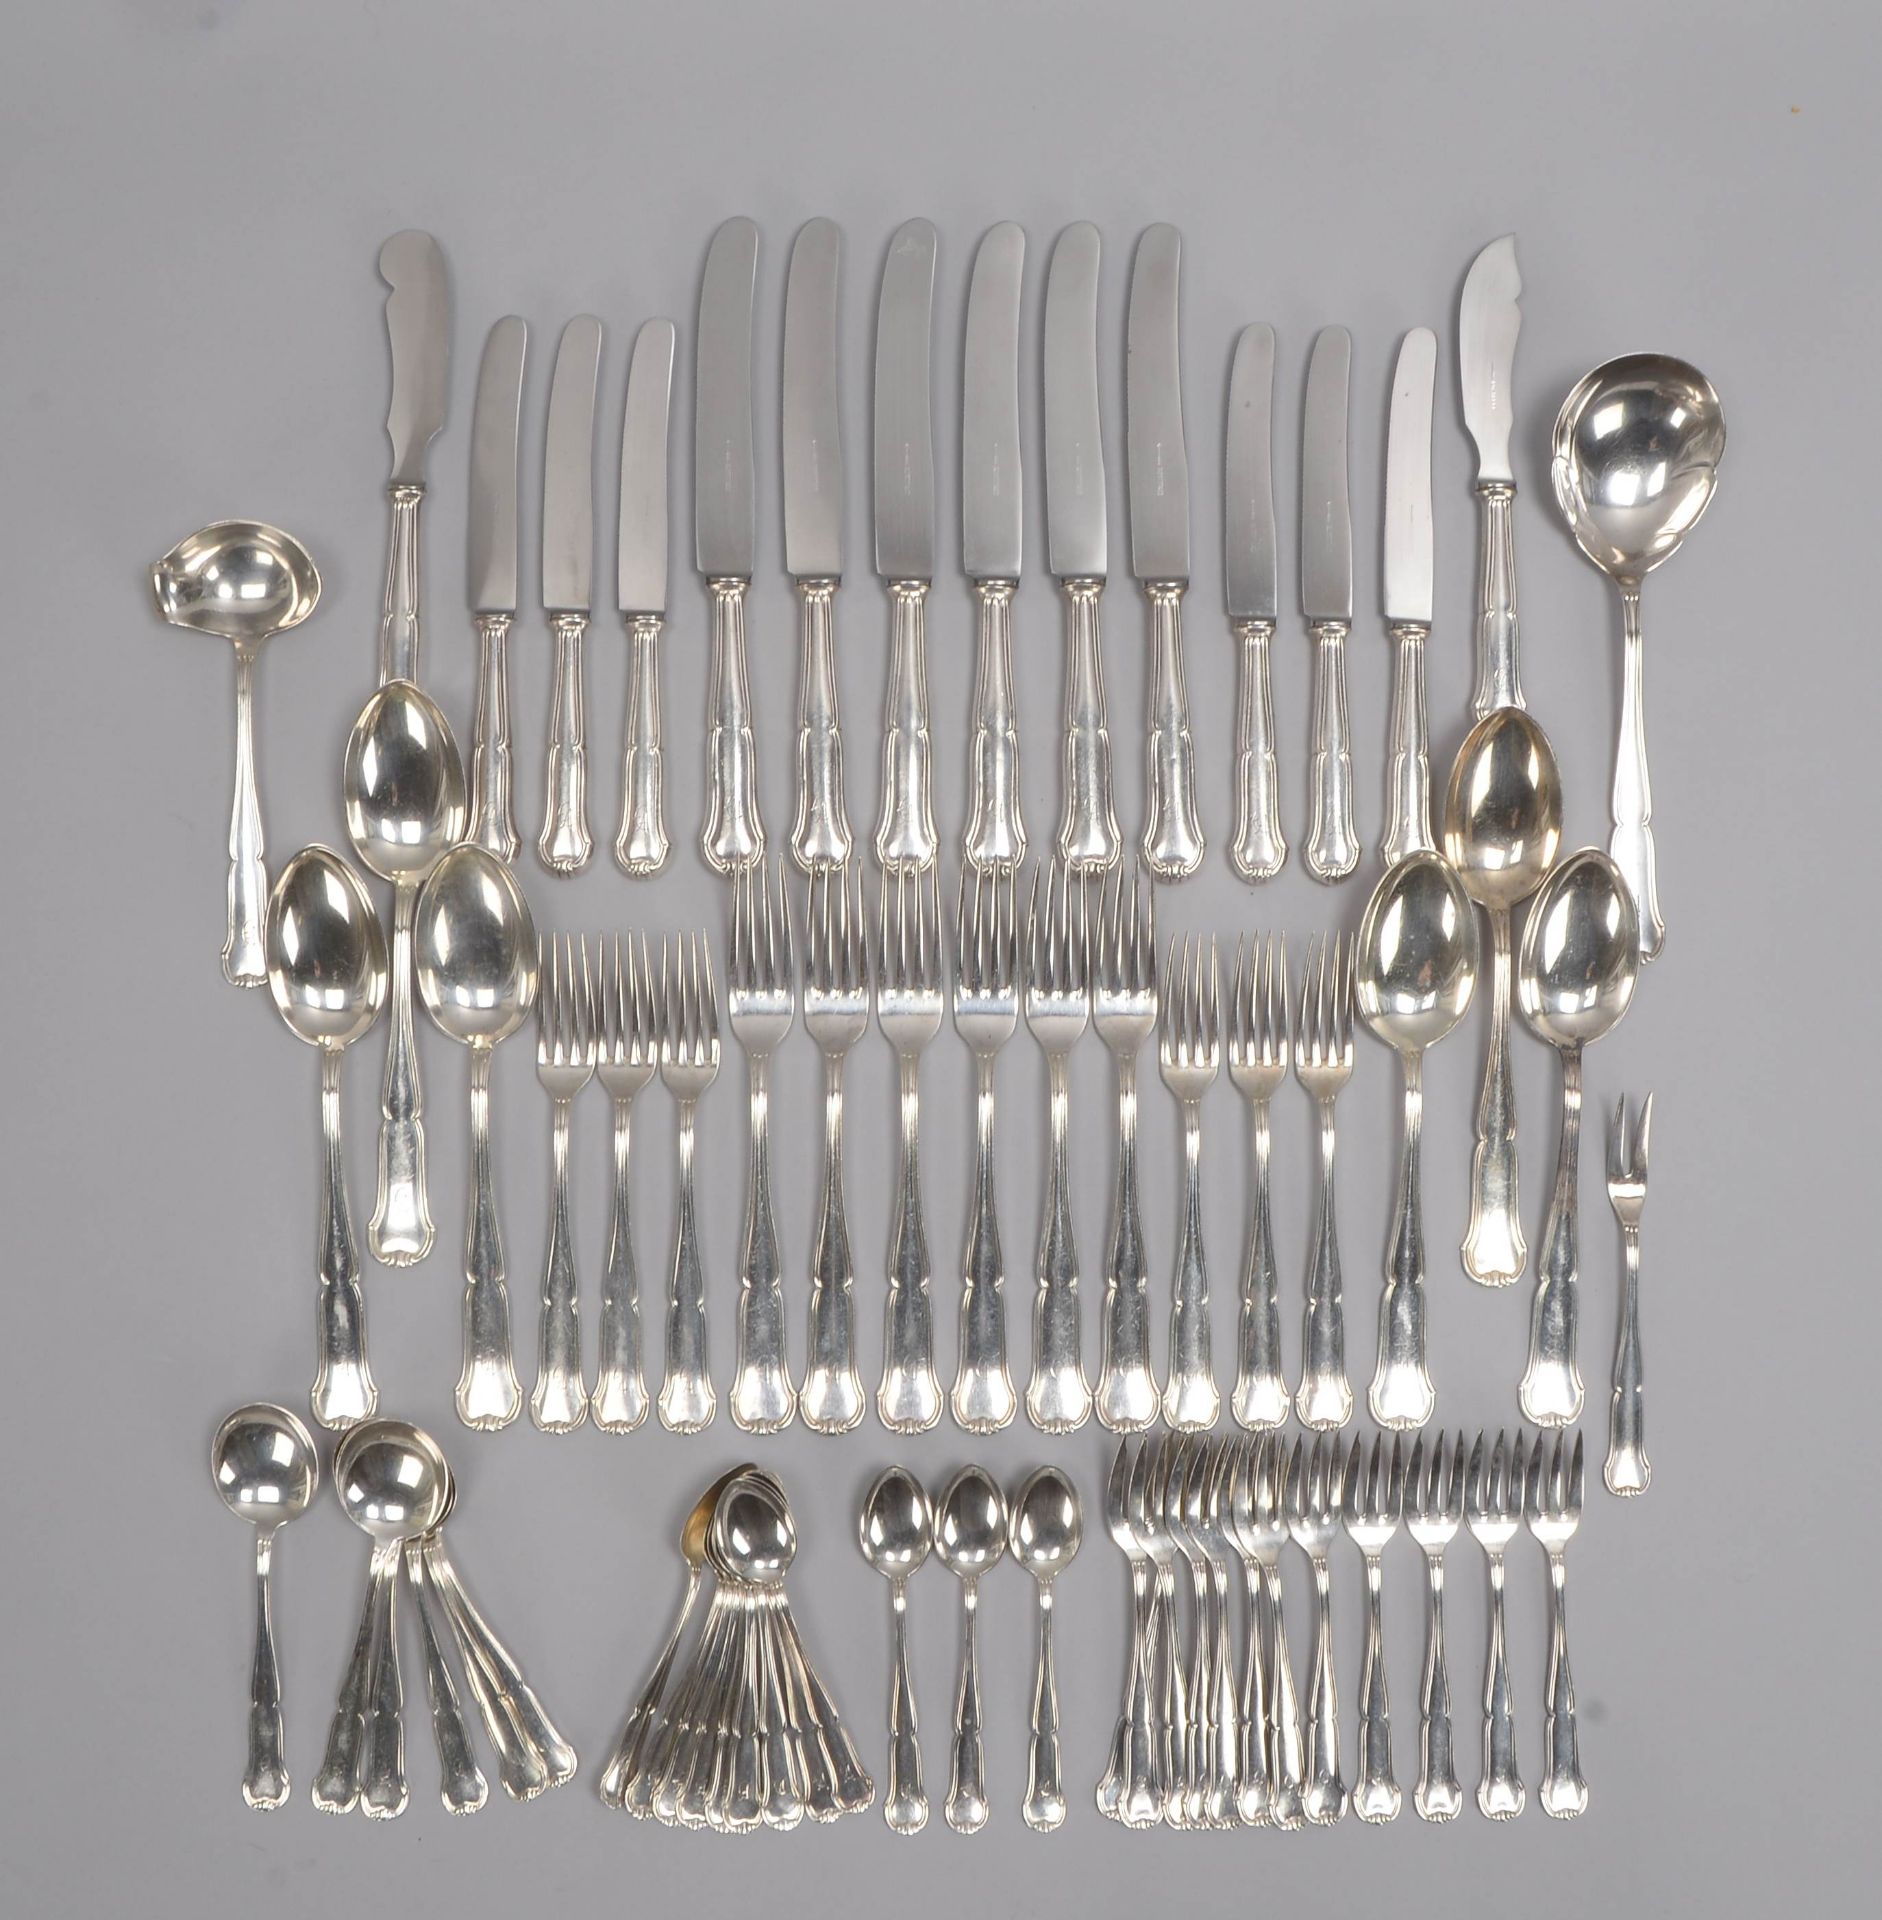 Tafelbesteck, 800 Silber, umfassend: jeweils 6x Speisemesser und 6x Speisegabeln, 6x Frühstücksmesse